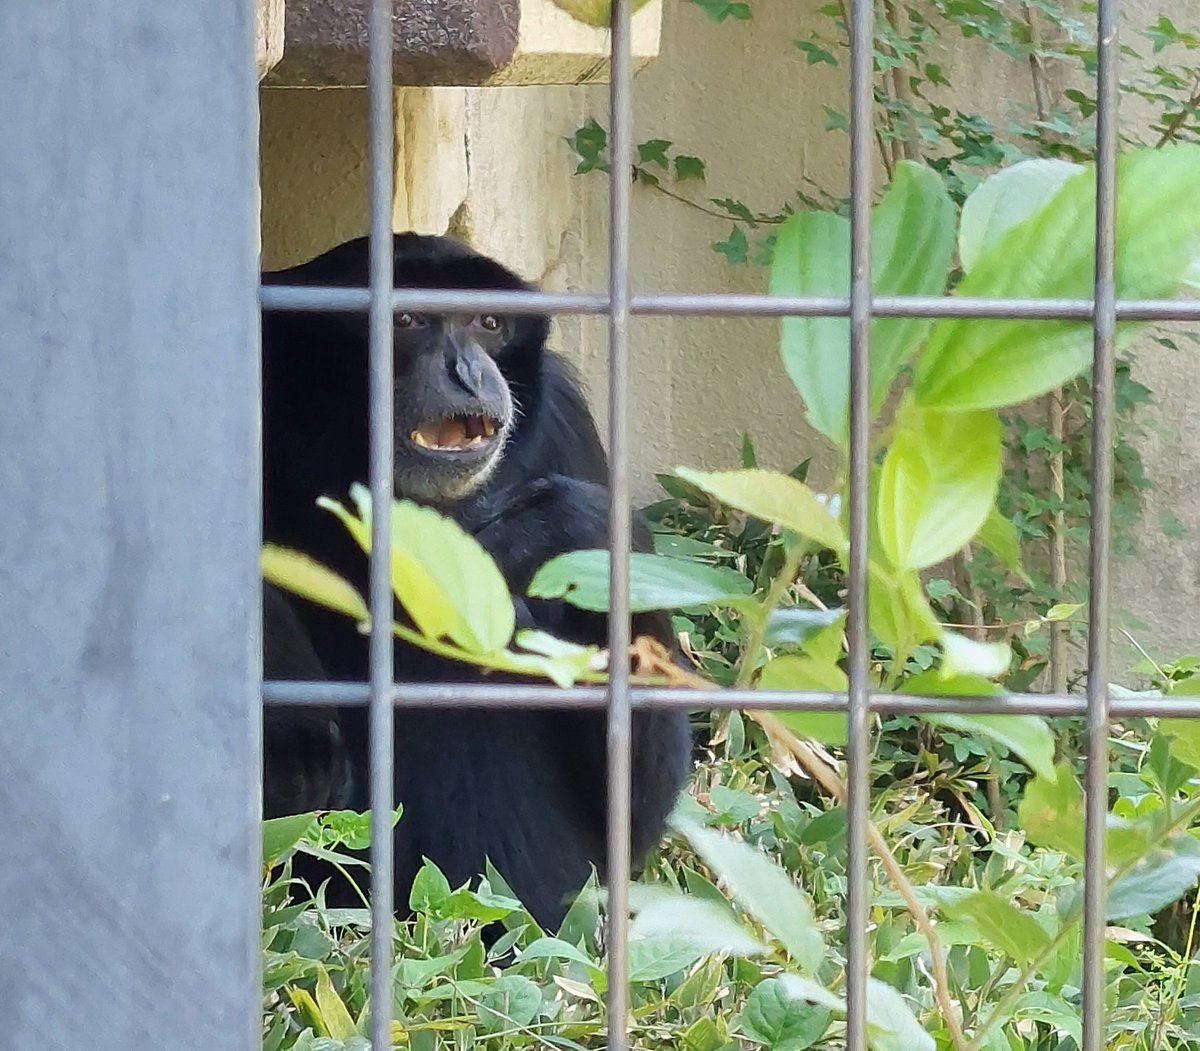 もう一度 #フクロテナガザル へ会いにきてみた

直前まで鳴きはしないけど、網越しに人々へ近づくファンサをしていたみたい
その後部屋の入口で腰を下ろして…

（先々週日曜日撮影）
#東山動植物園